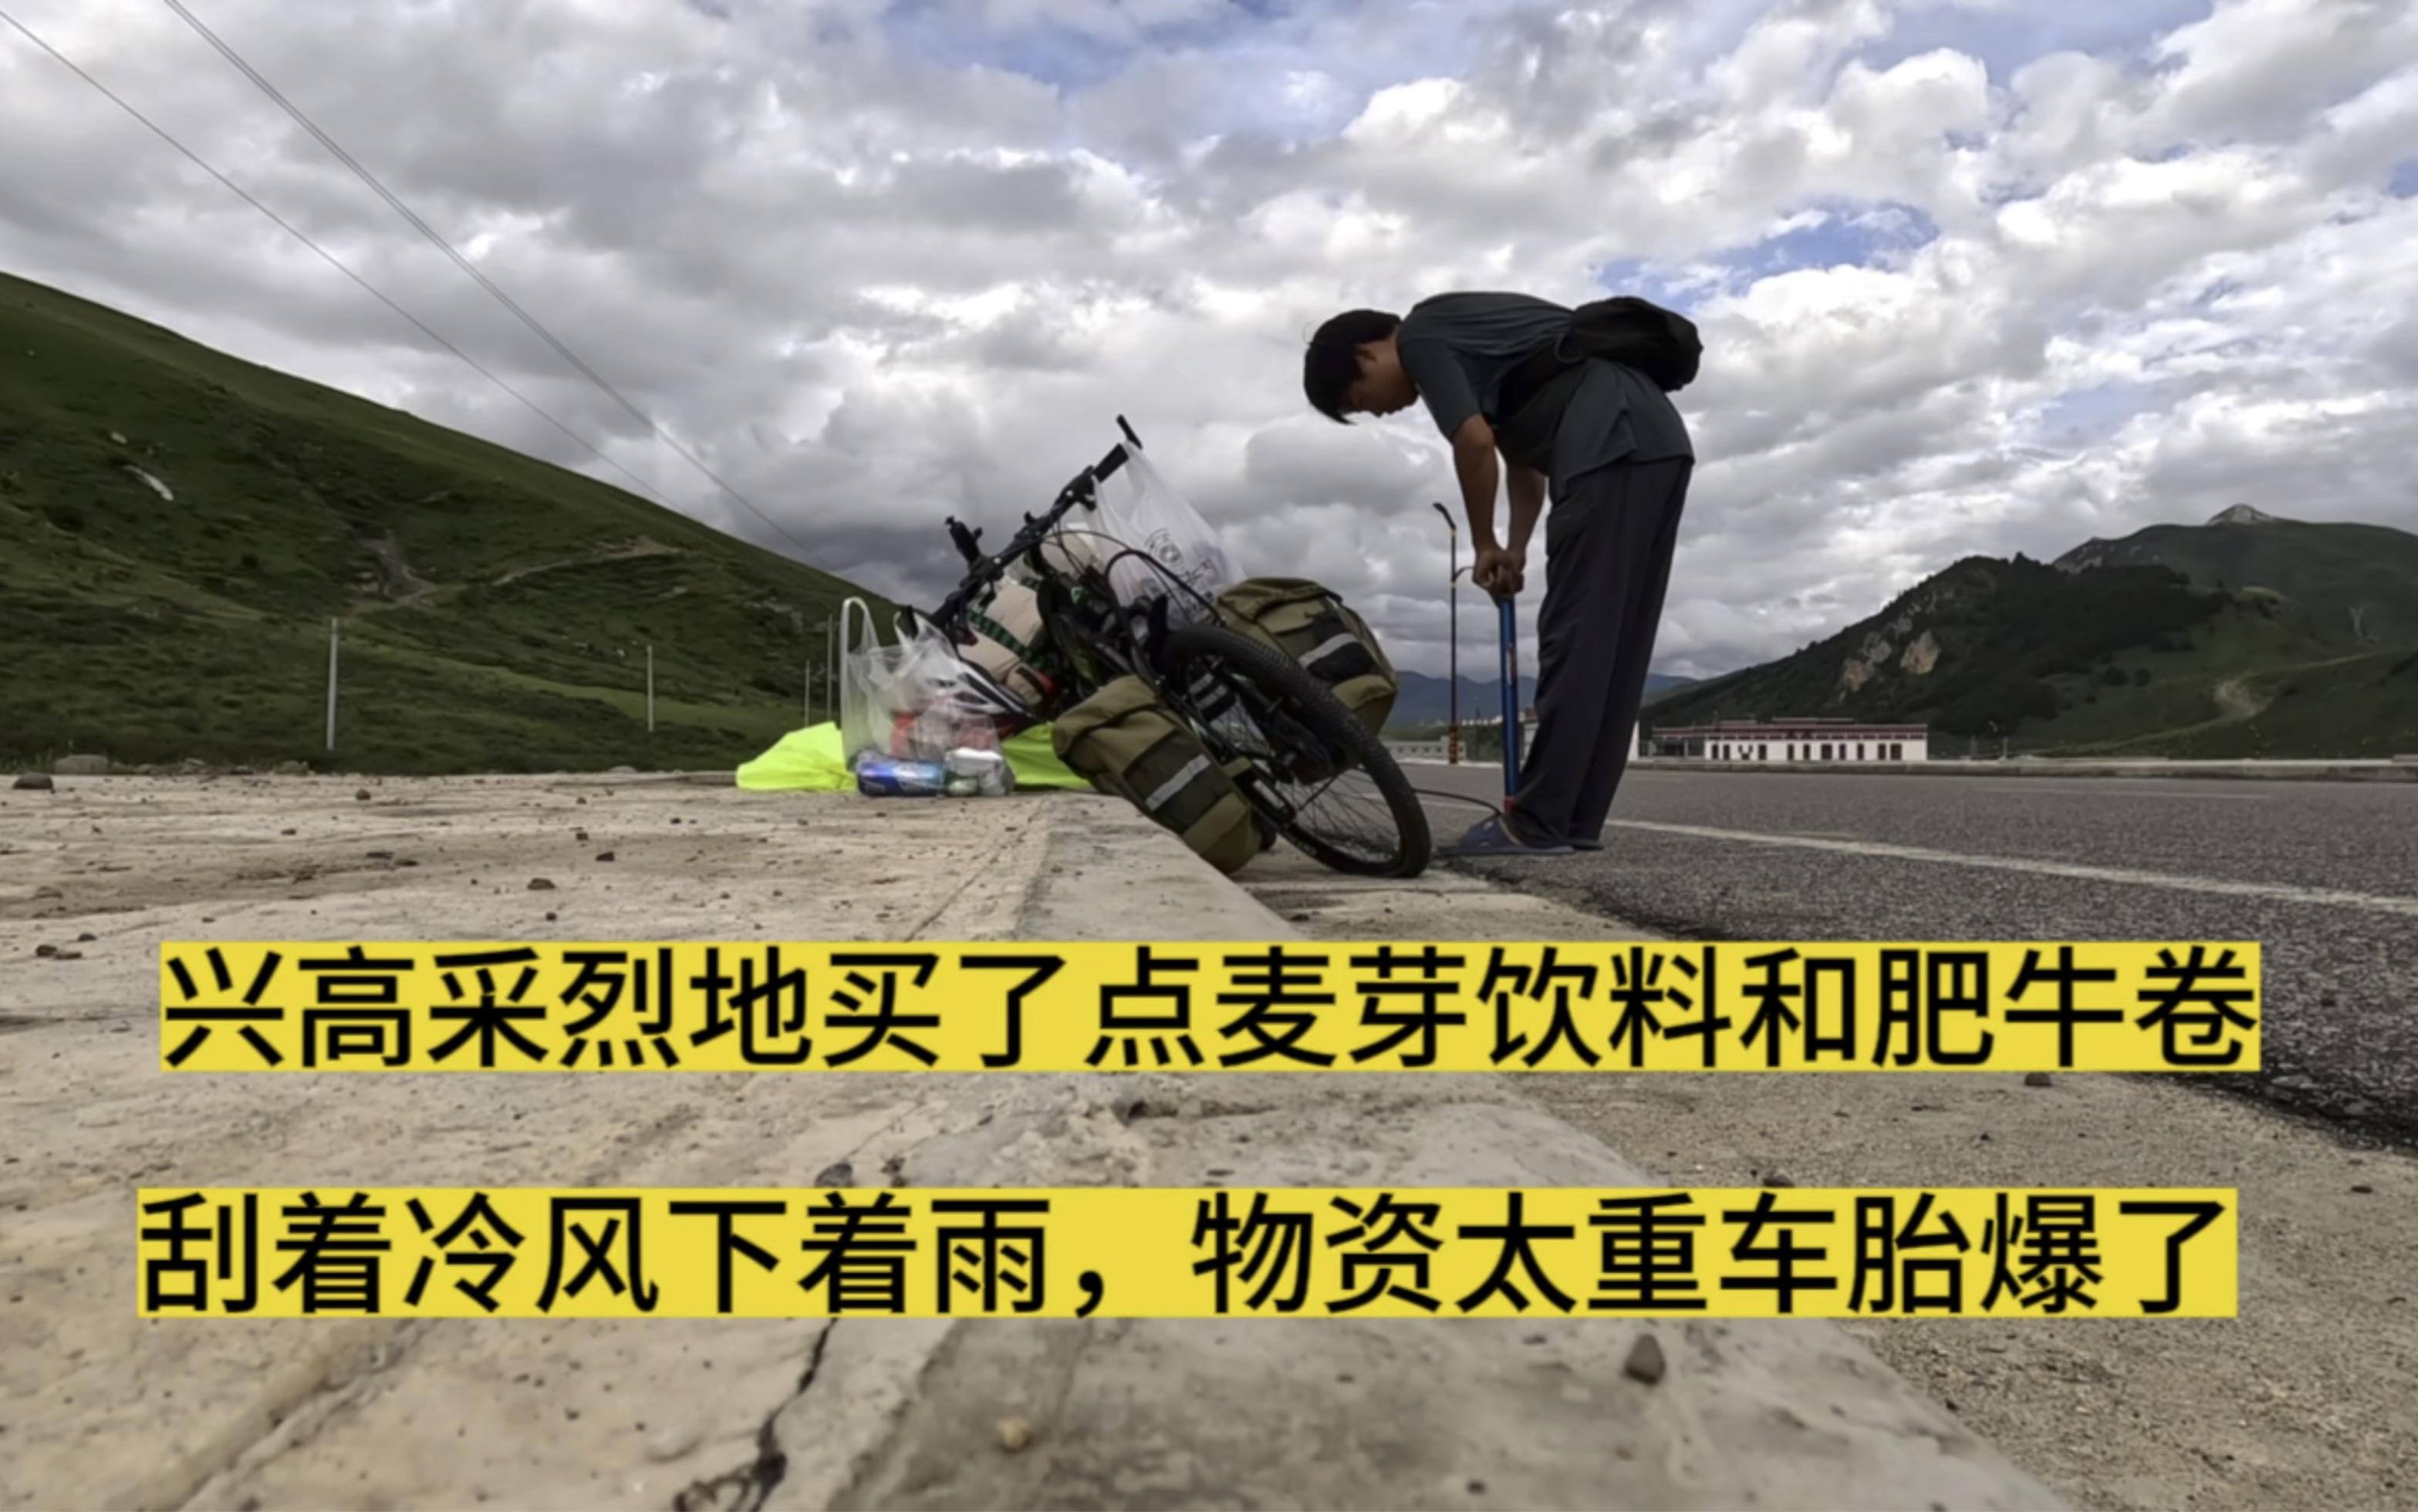 四川德格县多名藏人被捕 甘孜县出现西藏独立传单 — 普通话主页